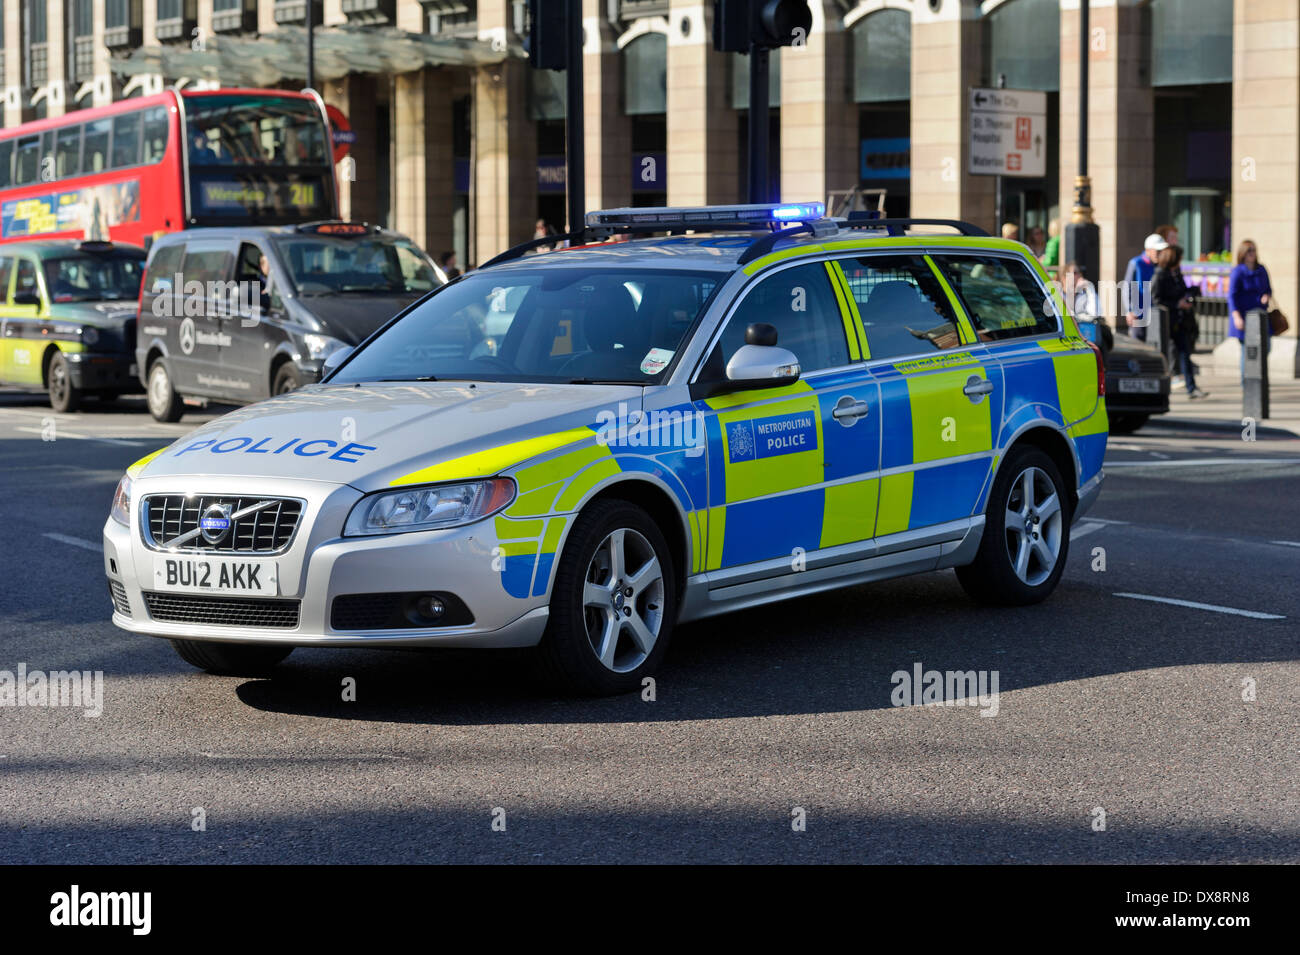 Métropole moderne Voiture de police de la circulation routière les barricades d'arrêter le trafic à travers, Londres, Angleterre, Royaume-Uni. Banque D'Images